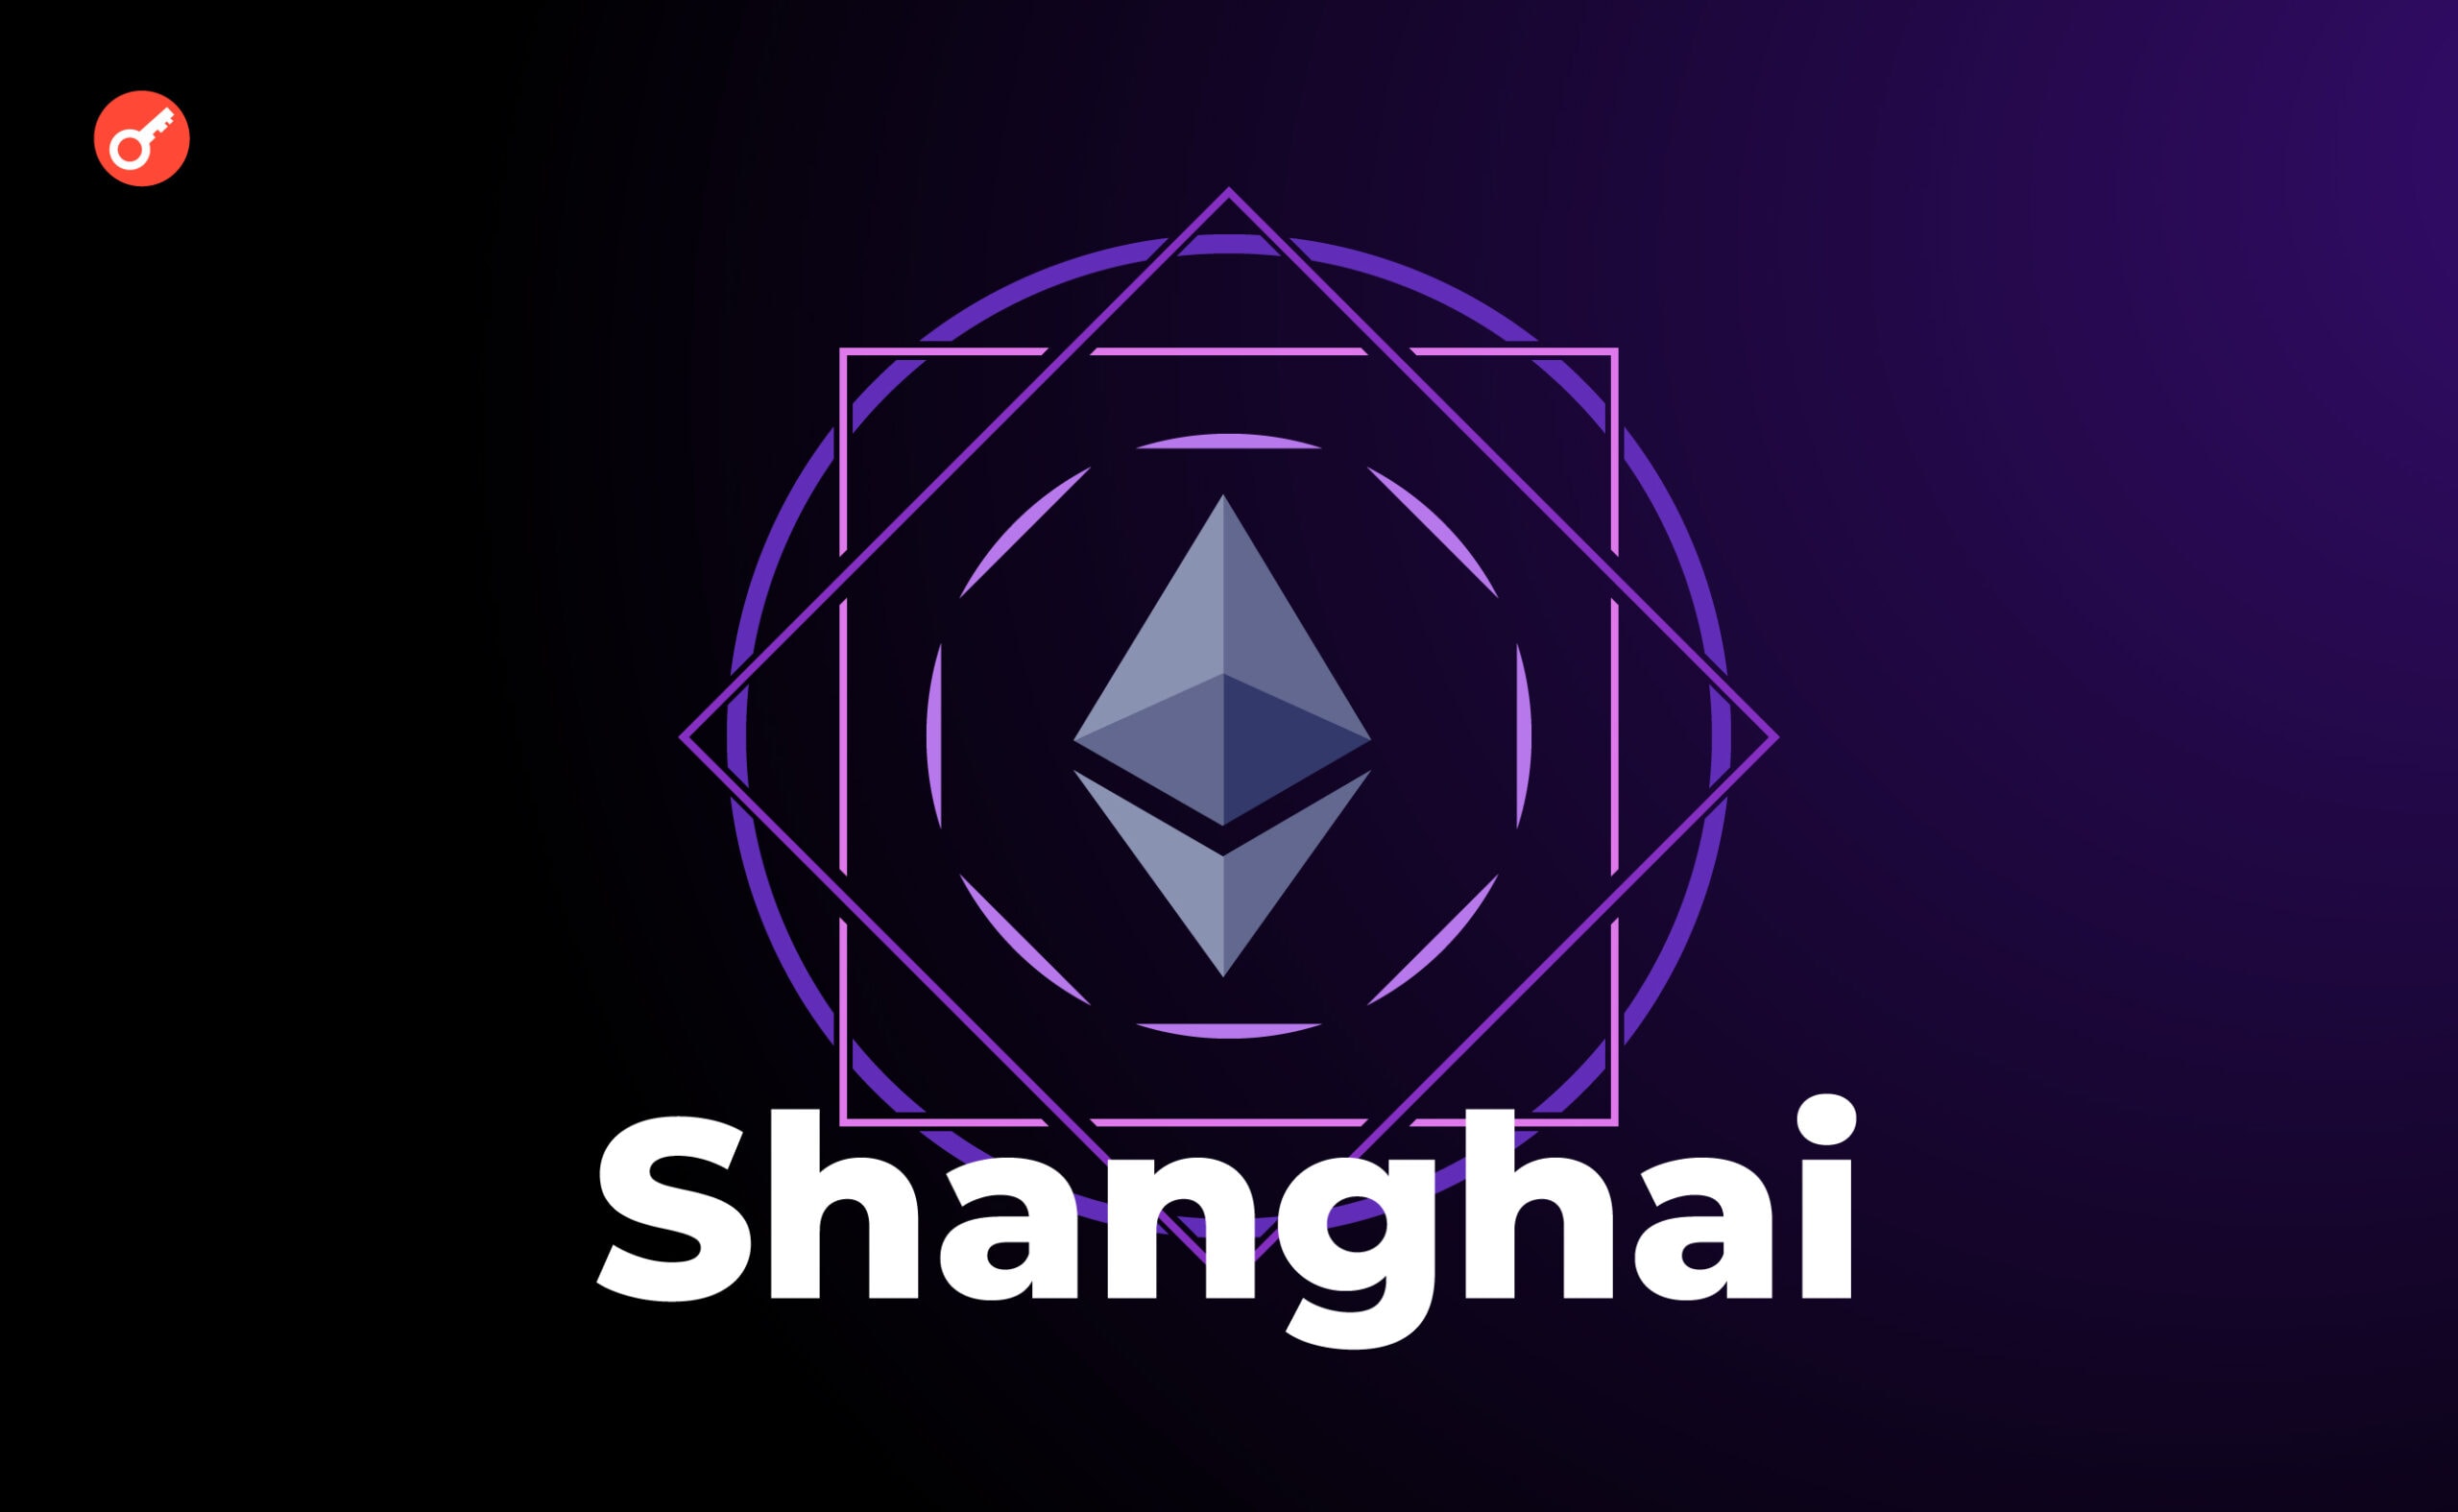 Shanghai — оновлення мережі Ethereum. Що далі? Головний колаж статті.